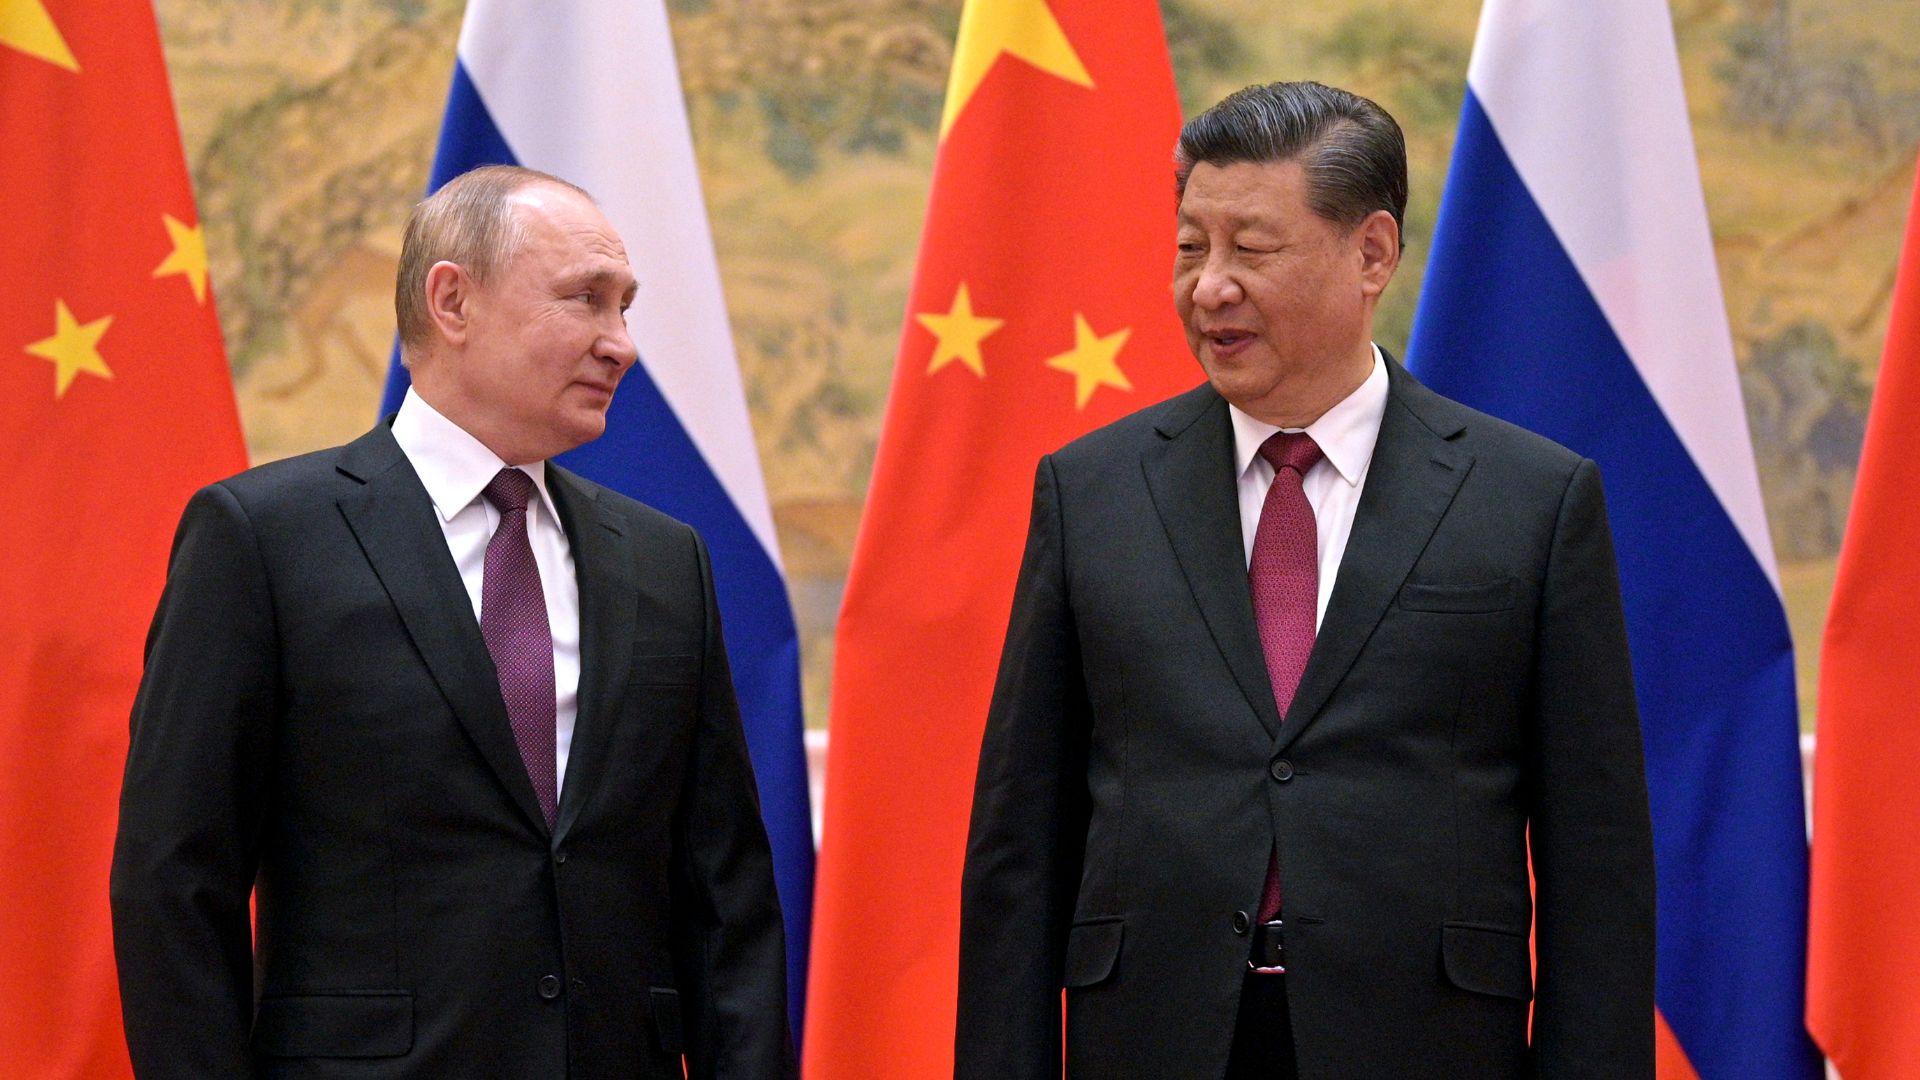 Der chinesische Präsident Xi Jinping und der russische Präsident Wladimir Putin 